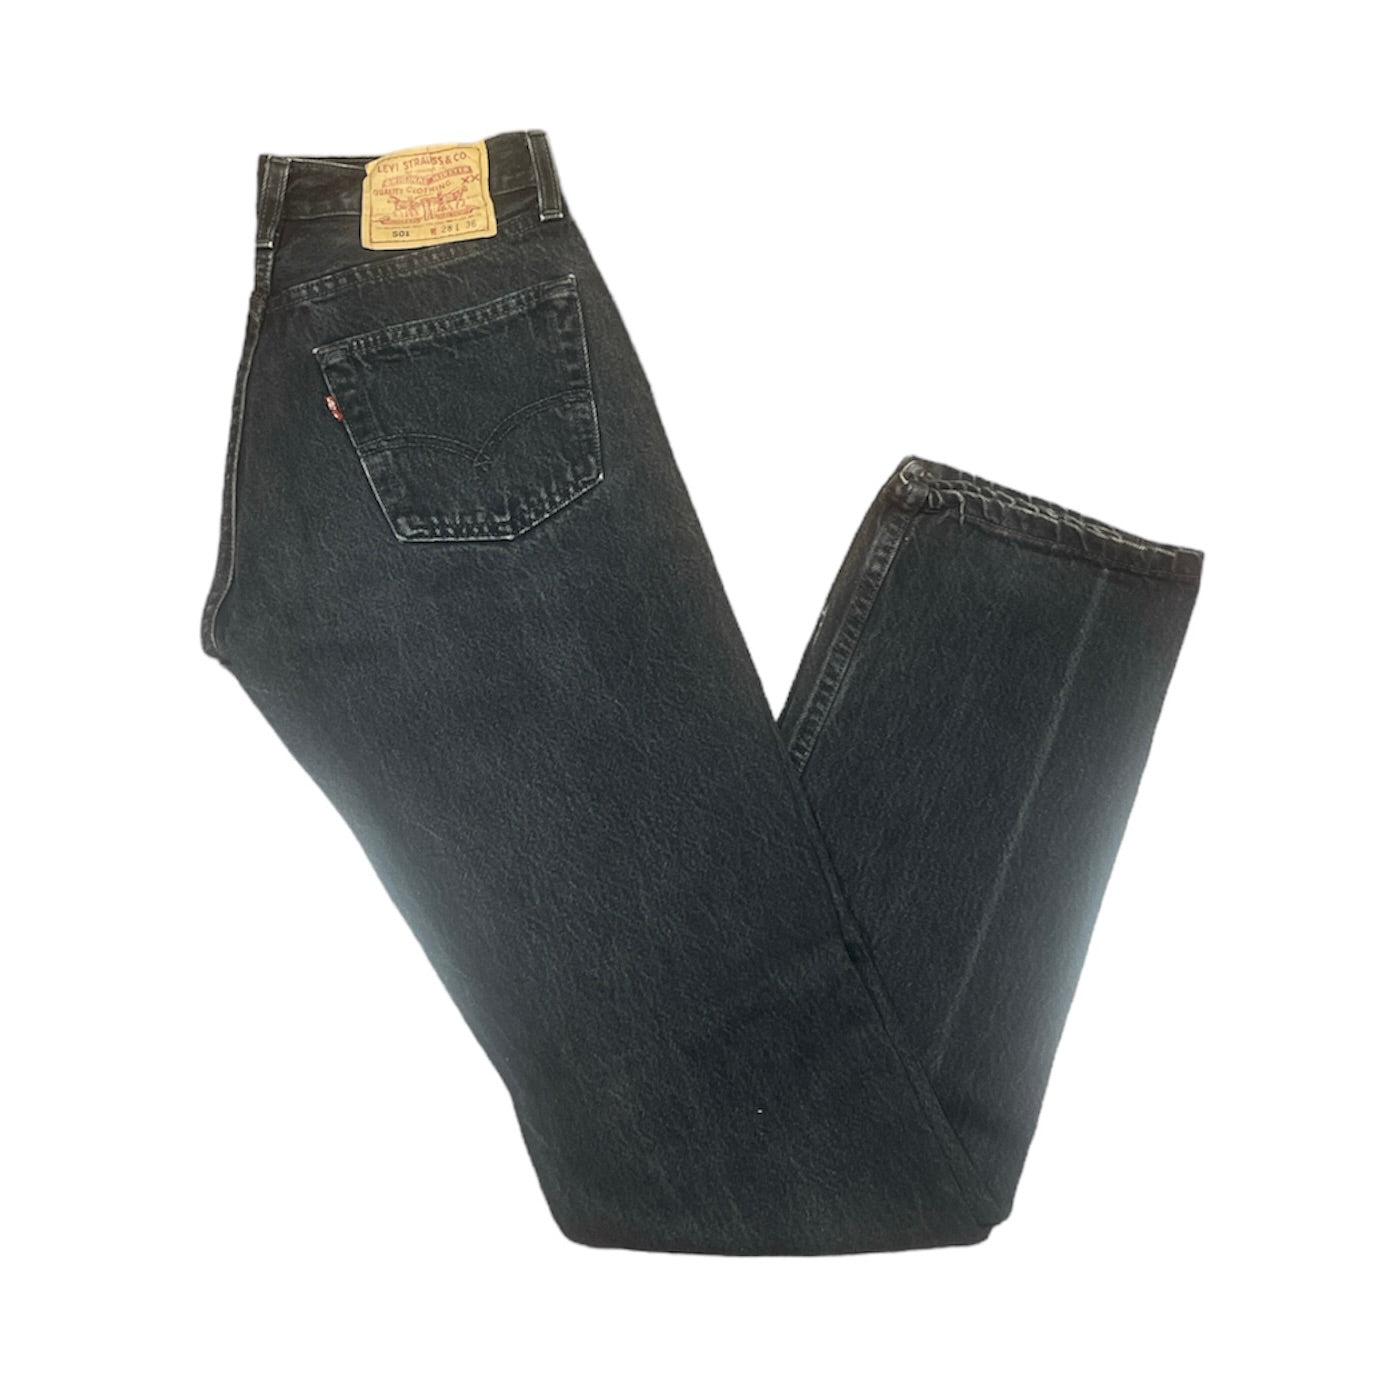 Vintage Levis 501 Black Jeans (W28/L36)